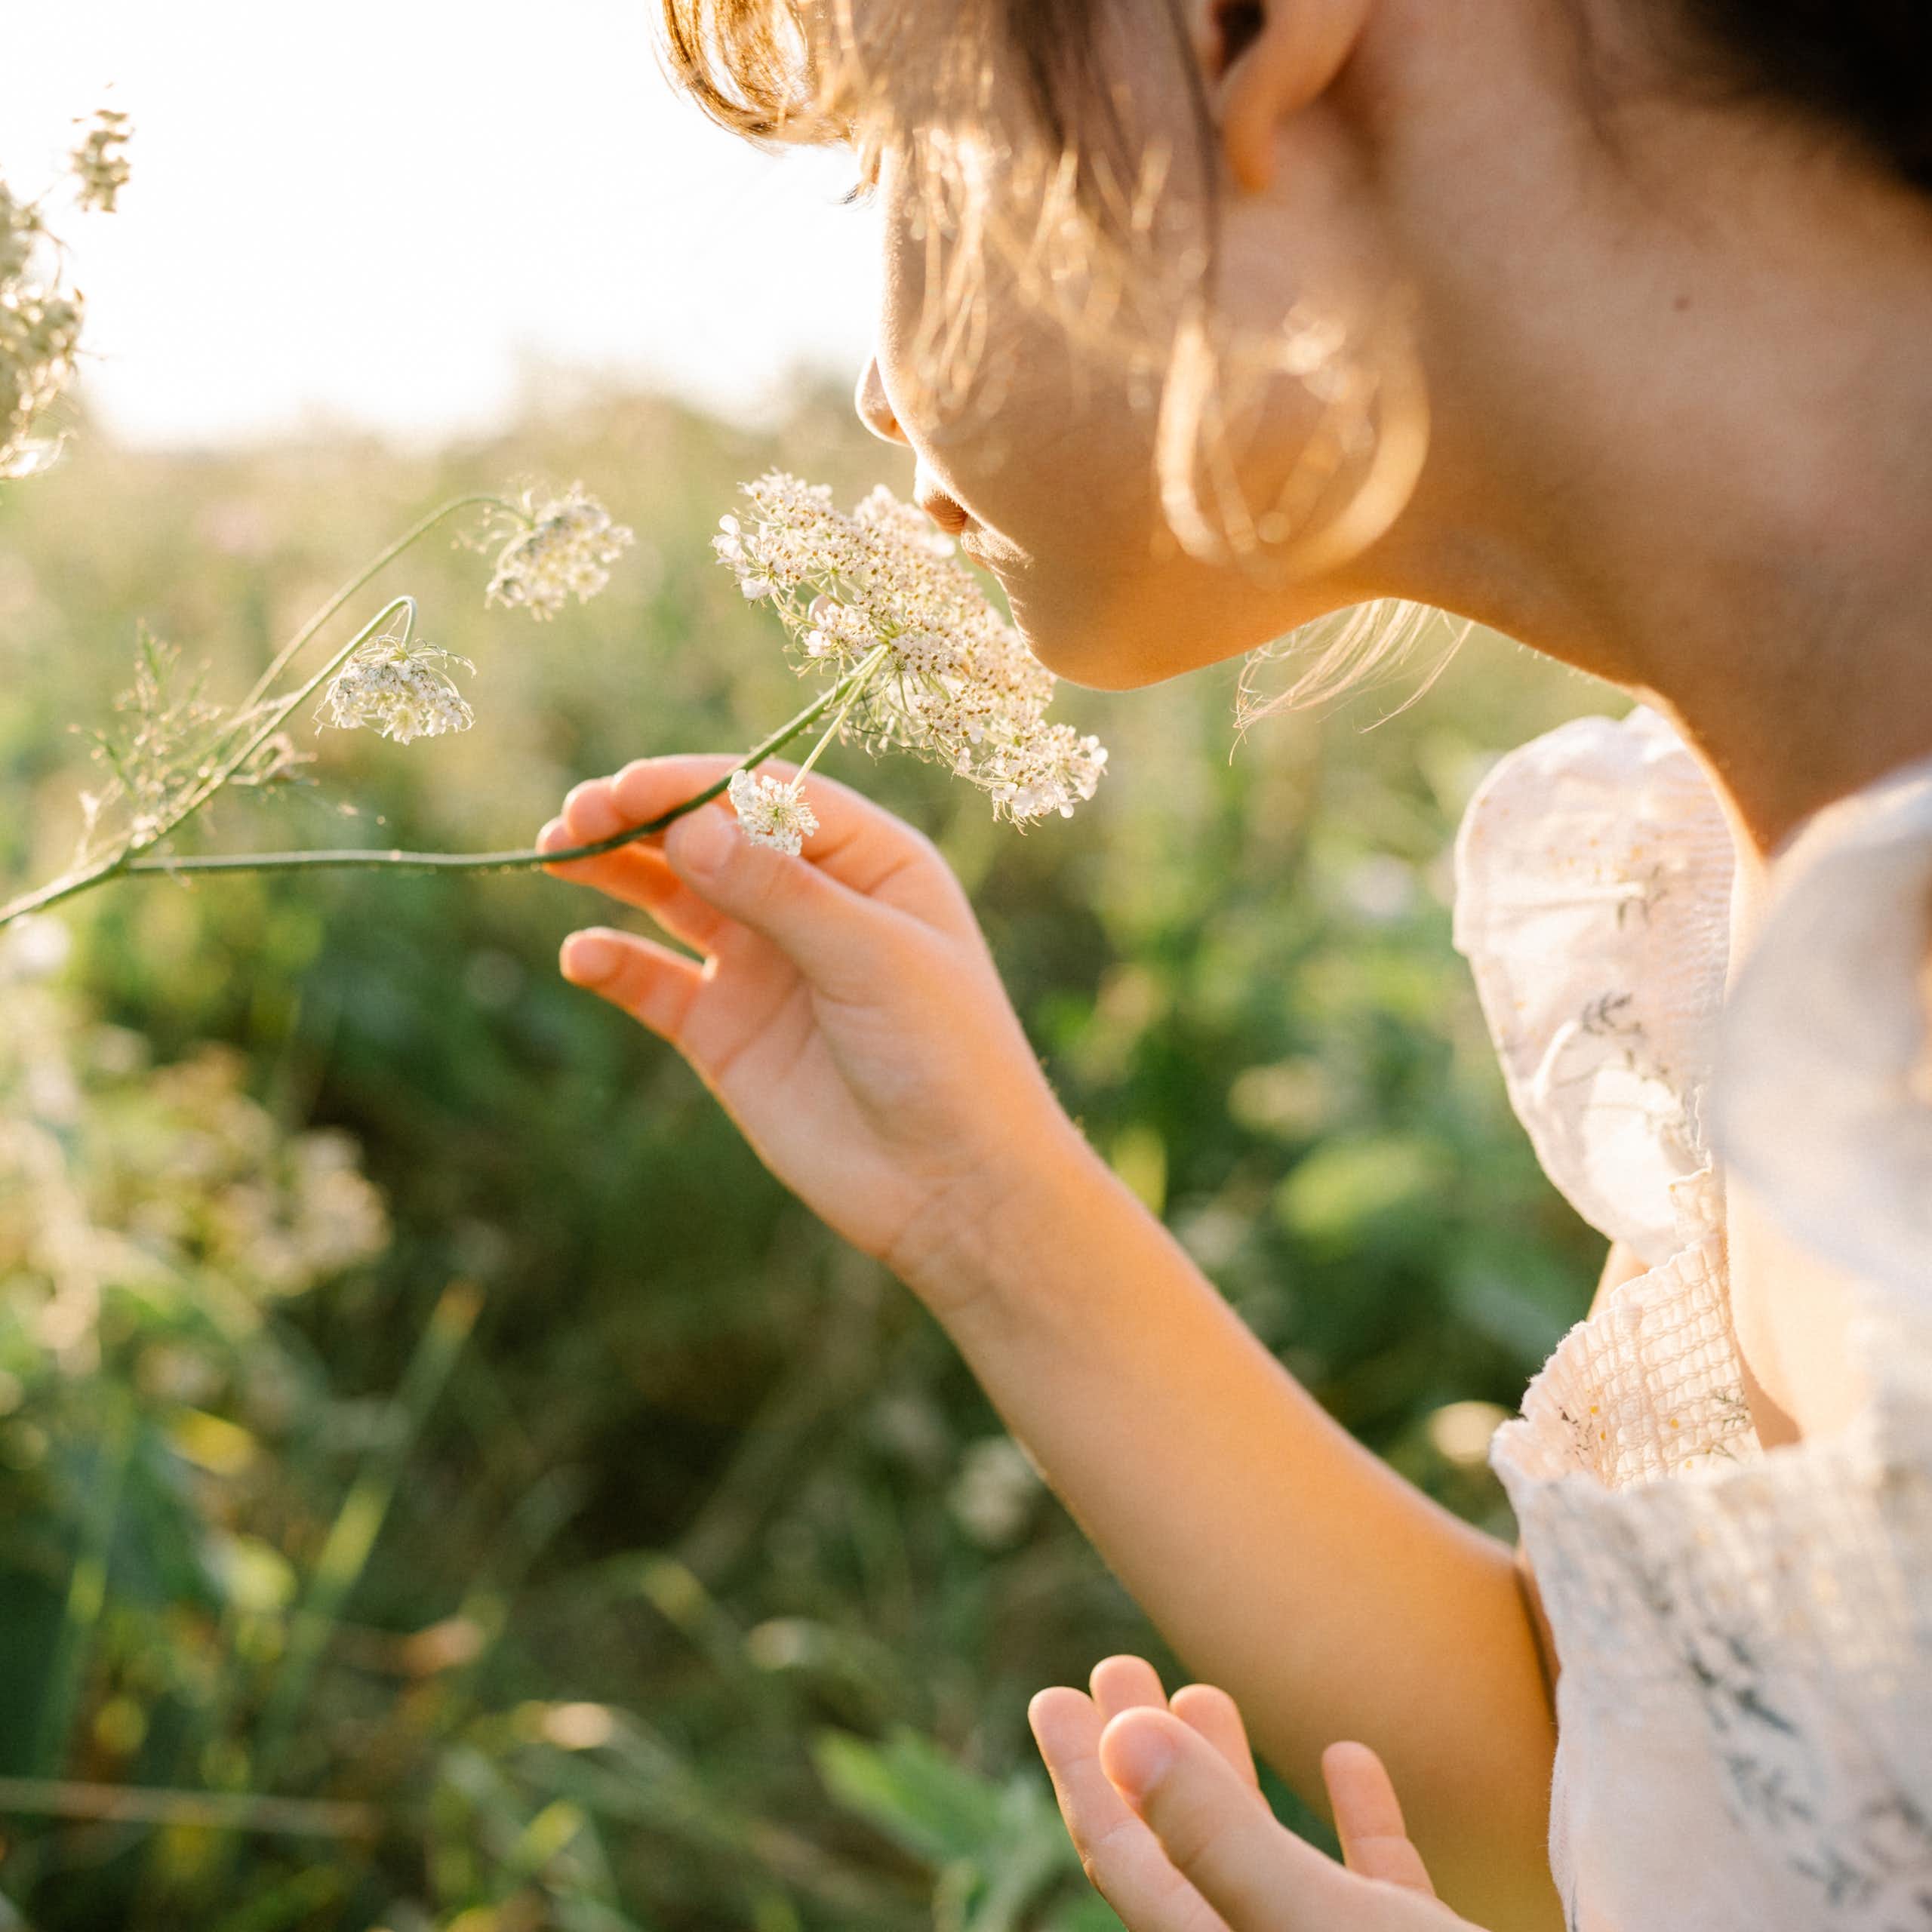 Little girl smells wild flowers in meadow